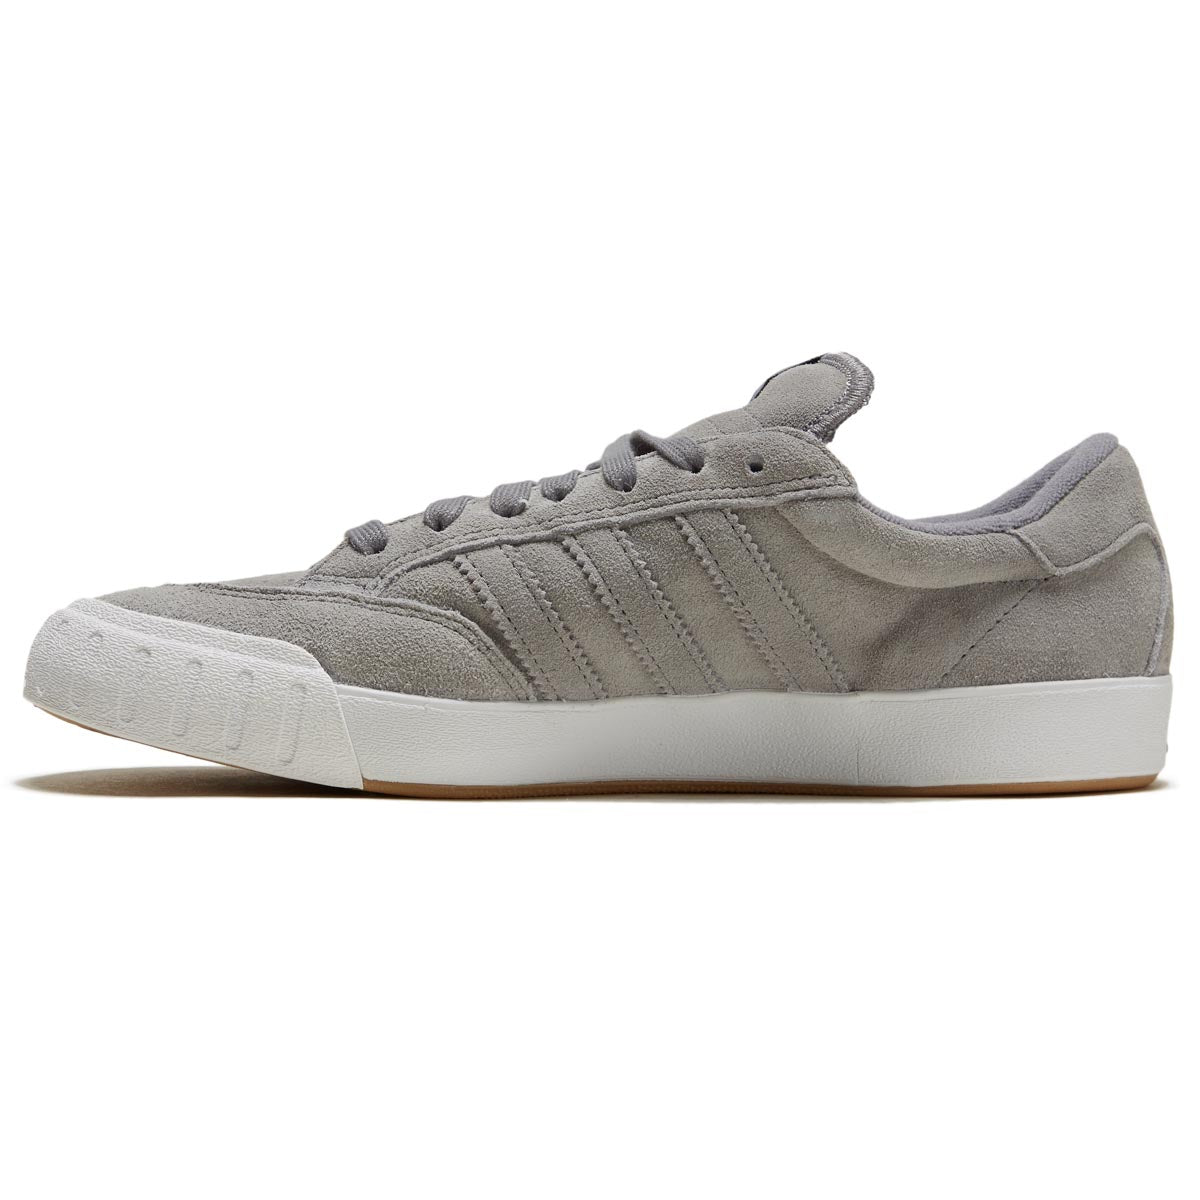 Adidas Nora Shoes - Grey/Grey/White image 2